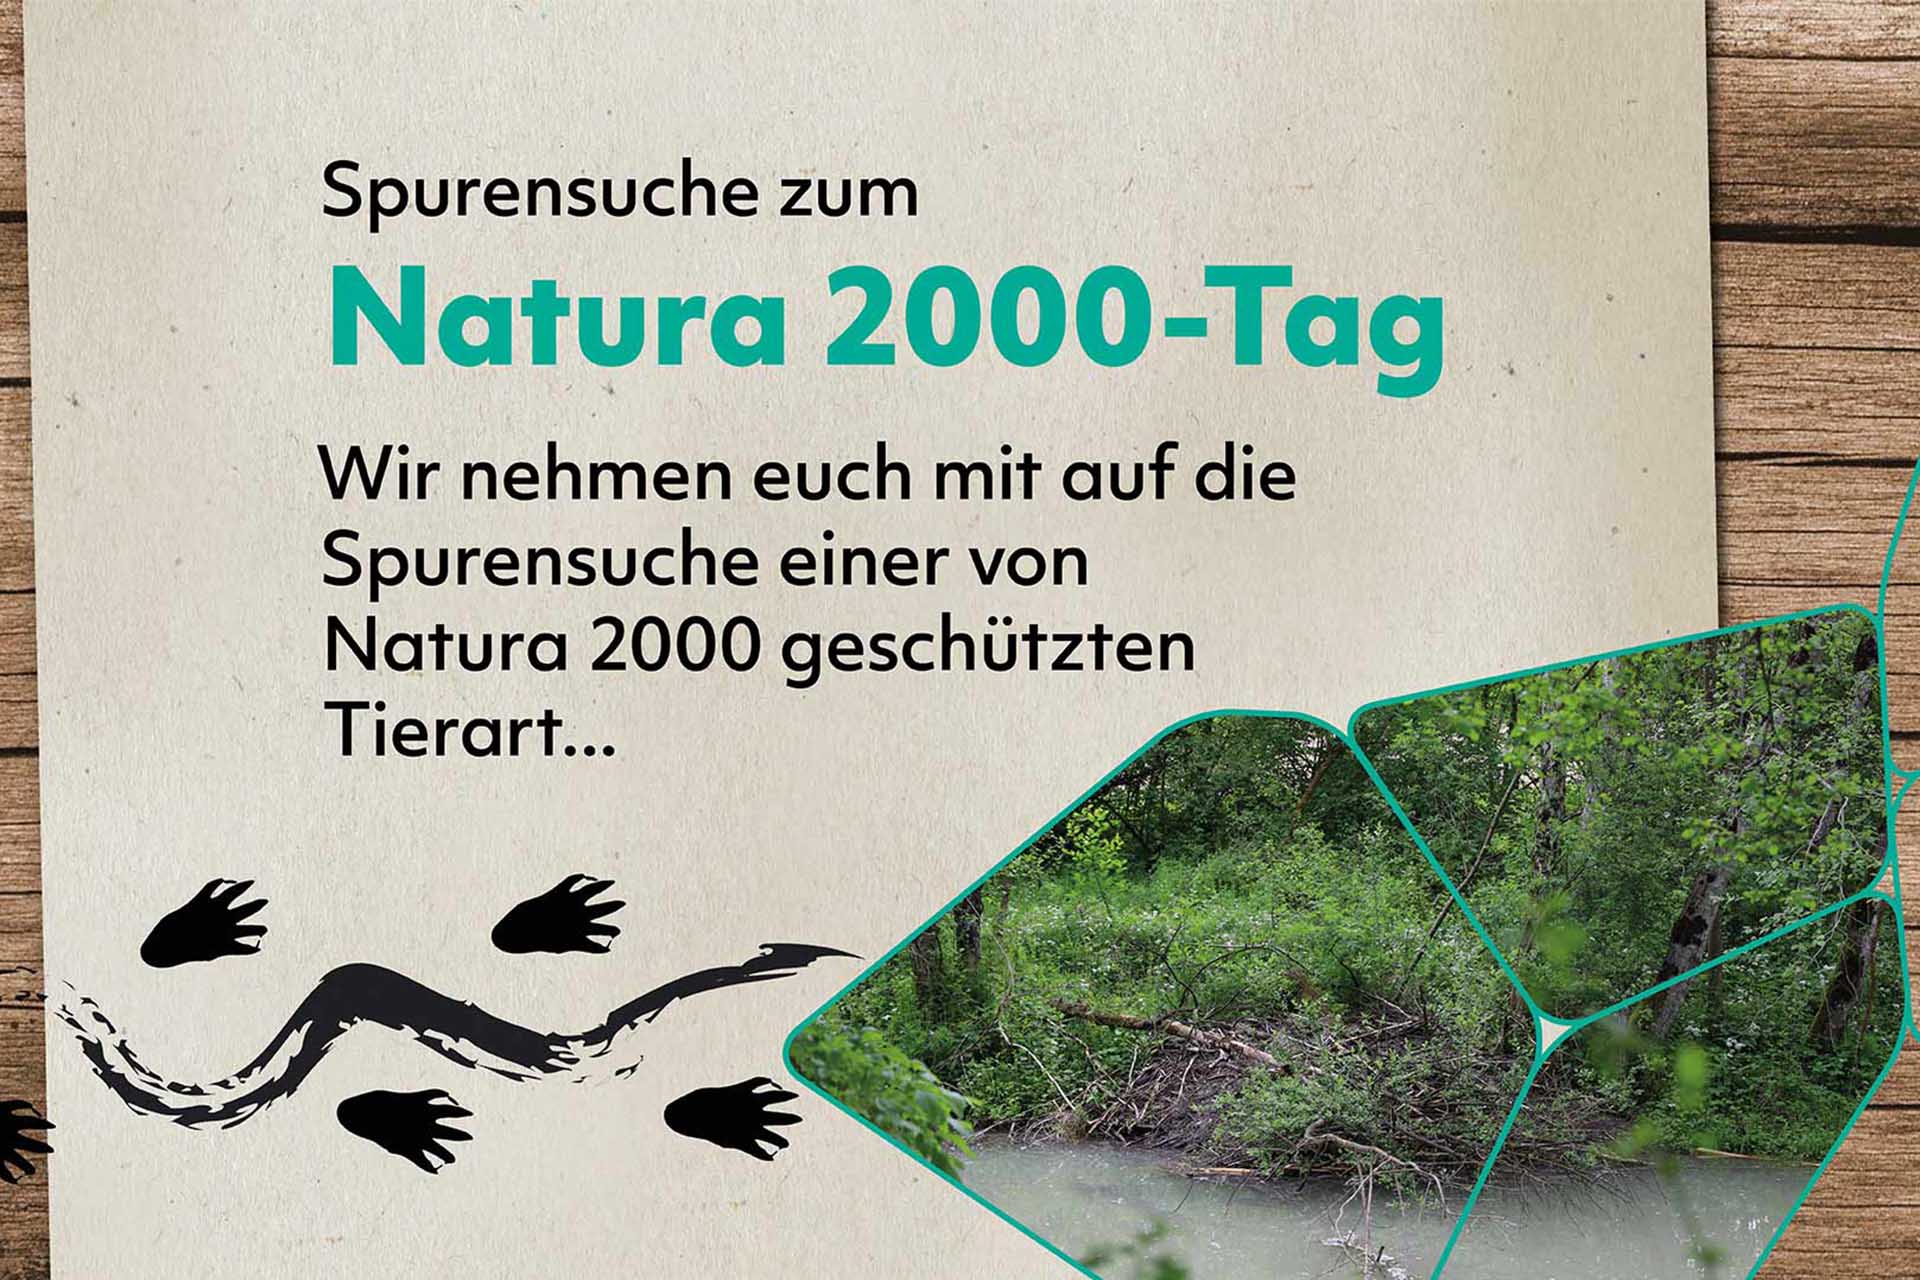 Ein Bachufer mit Biberburg, darüber die Aufschrift "Spurensuche zum Natura 2000-Tag. Wir nehmen euch mit auf die Spurensuche einer von Natura 2000 geschützten Tierart..."